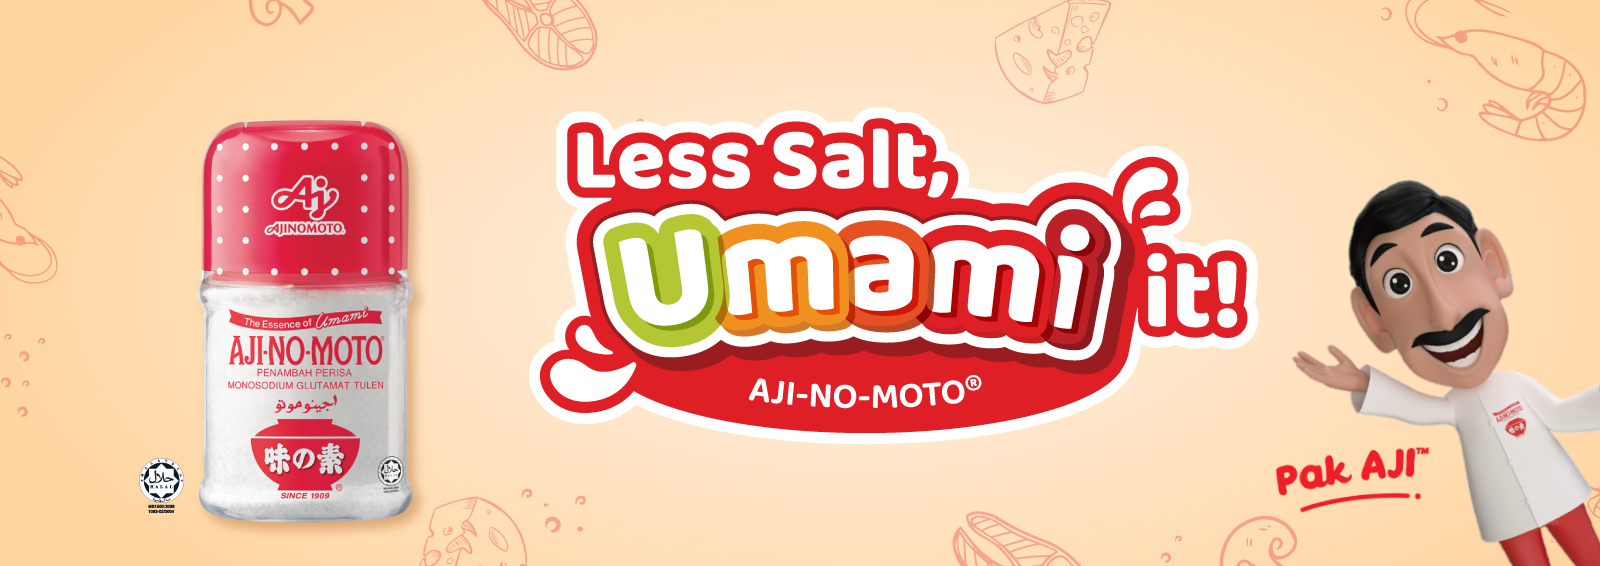 Less Salt Umami It! - 2022